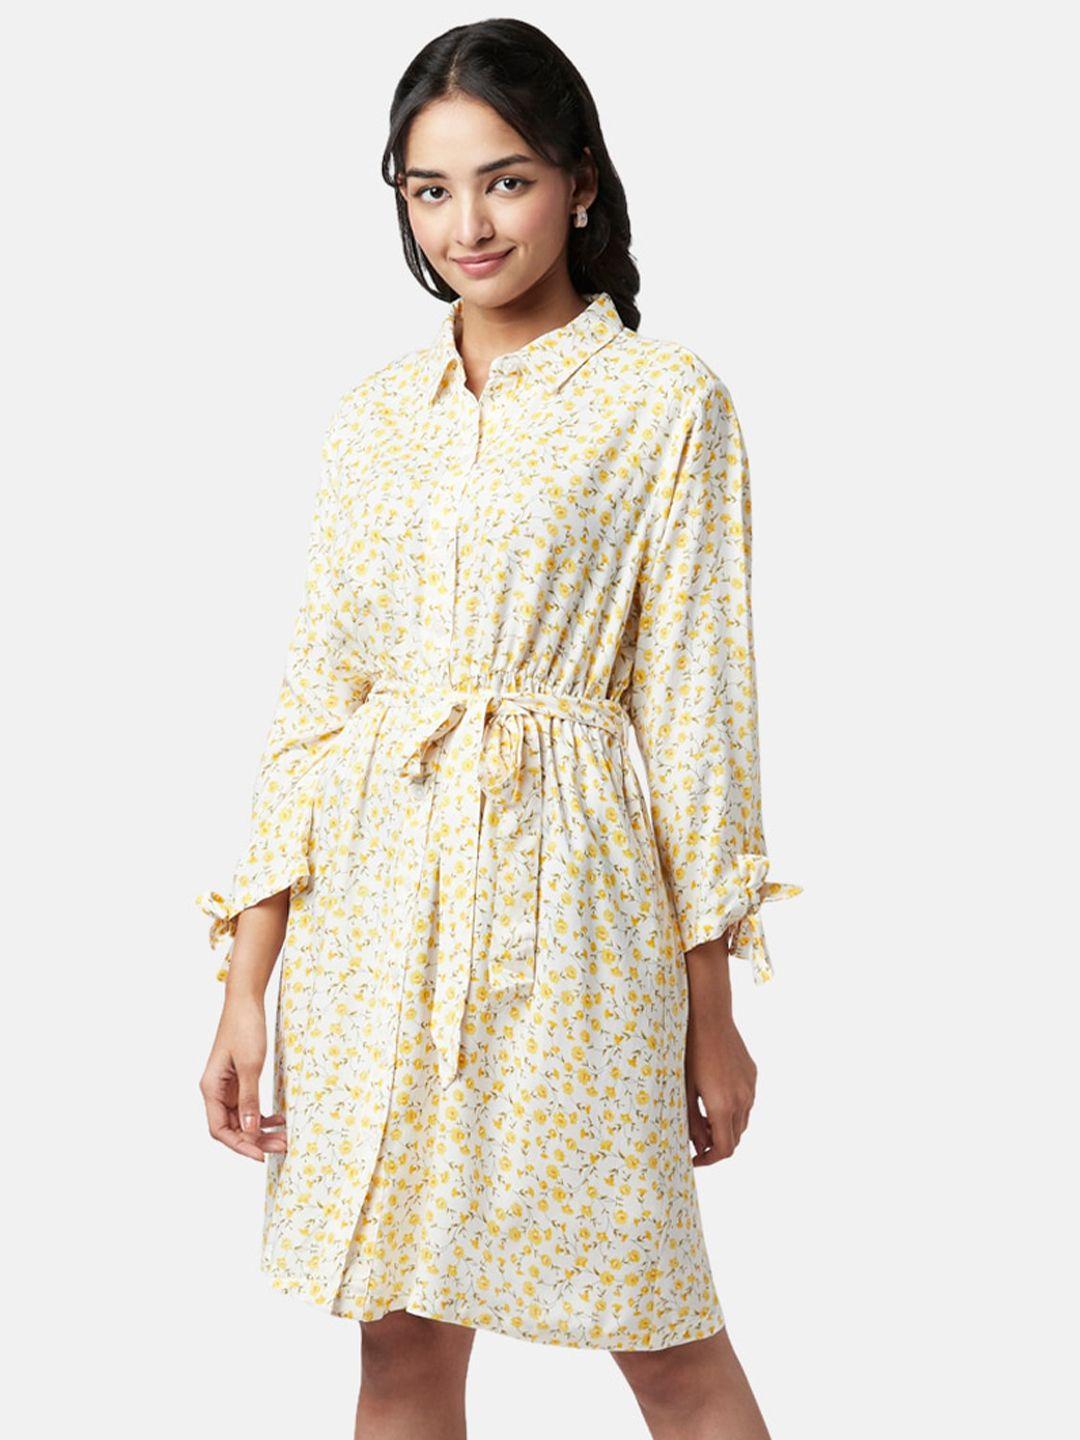 yu-by-pantaloons-floral-printed-shirt-dress